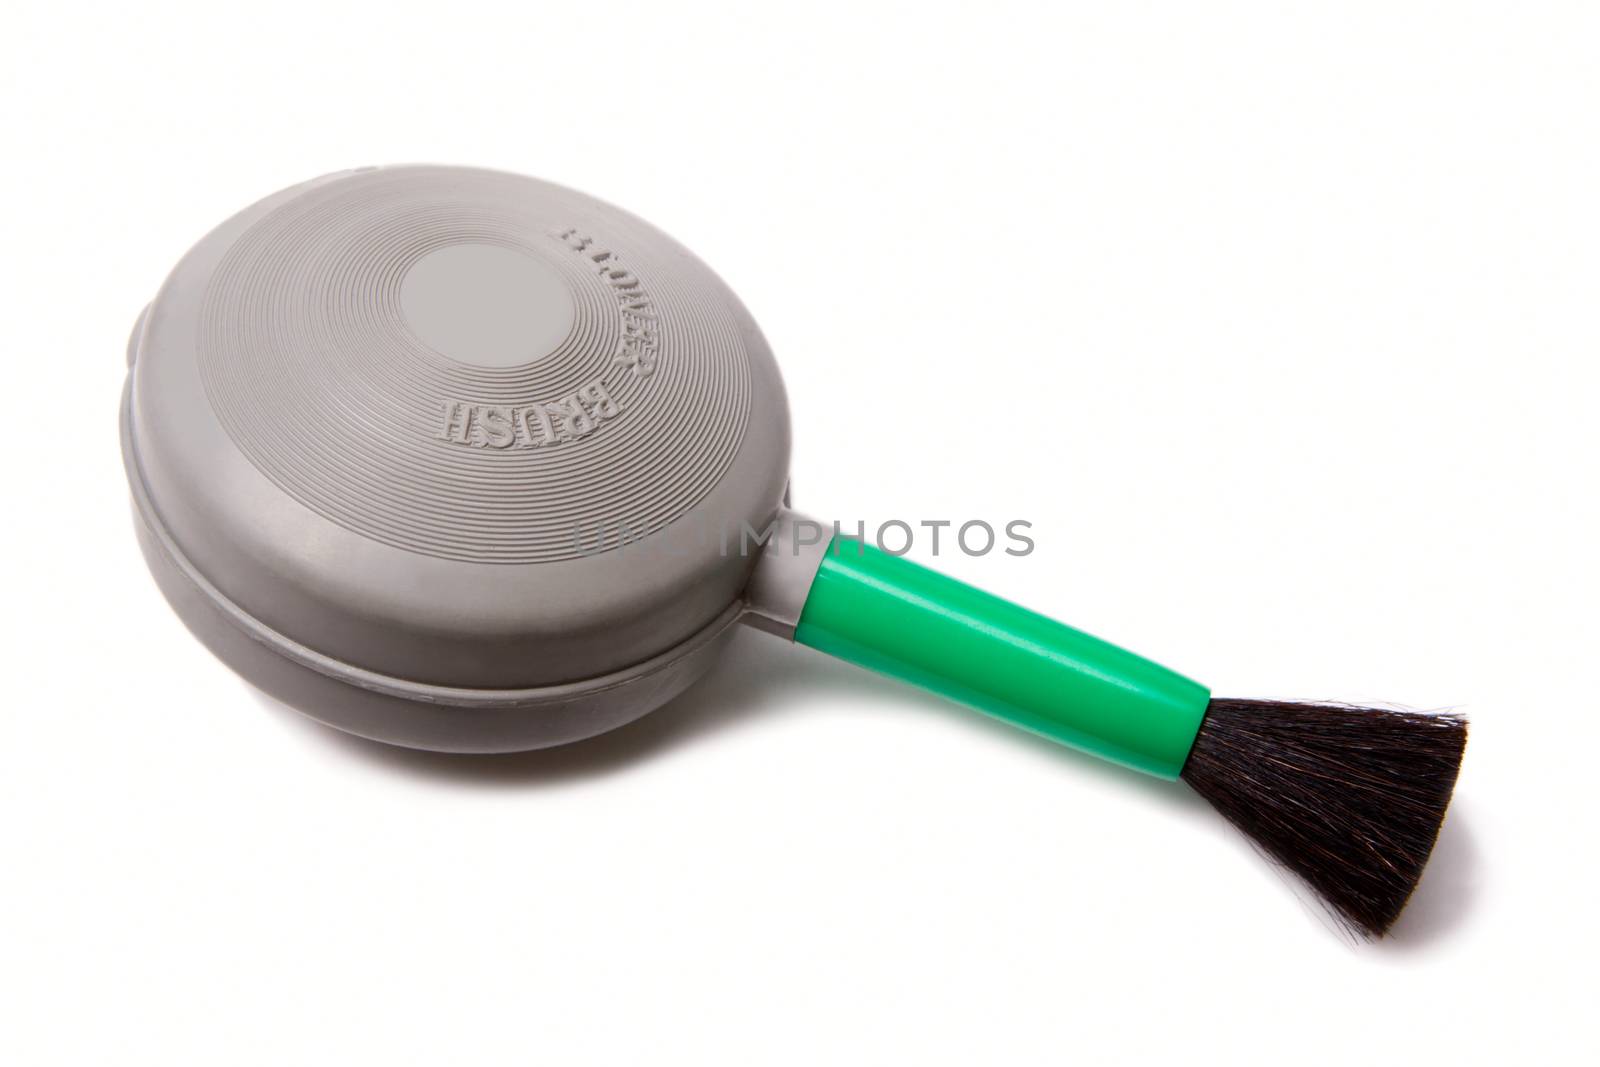 A lens brush blower 